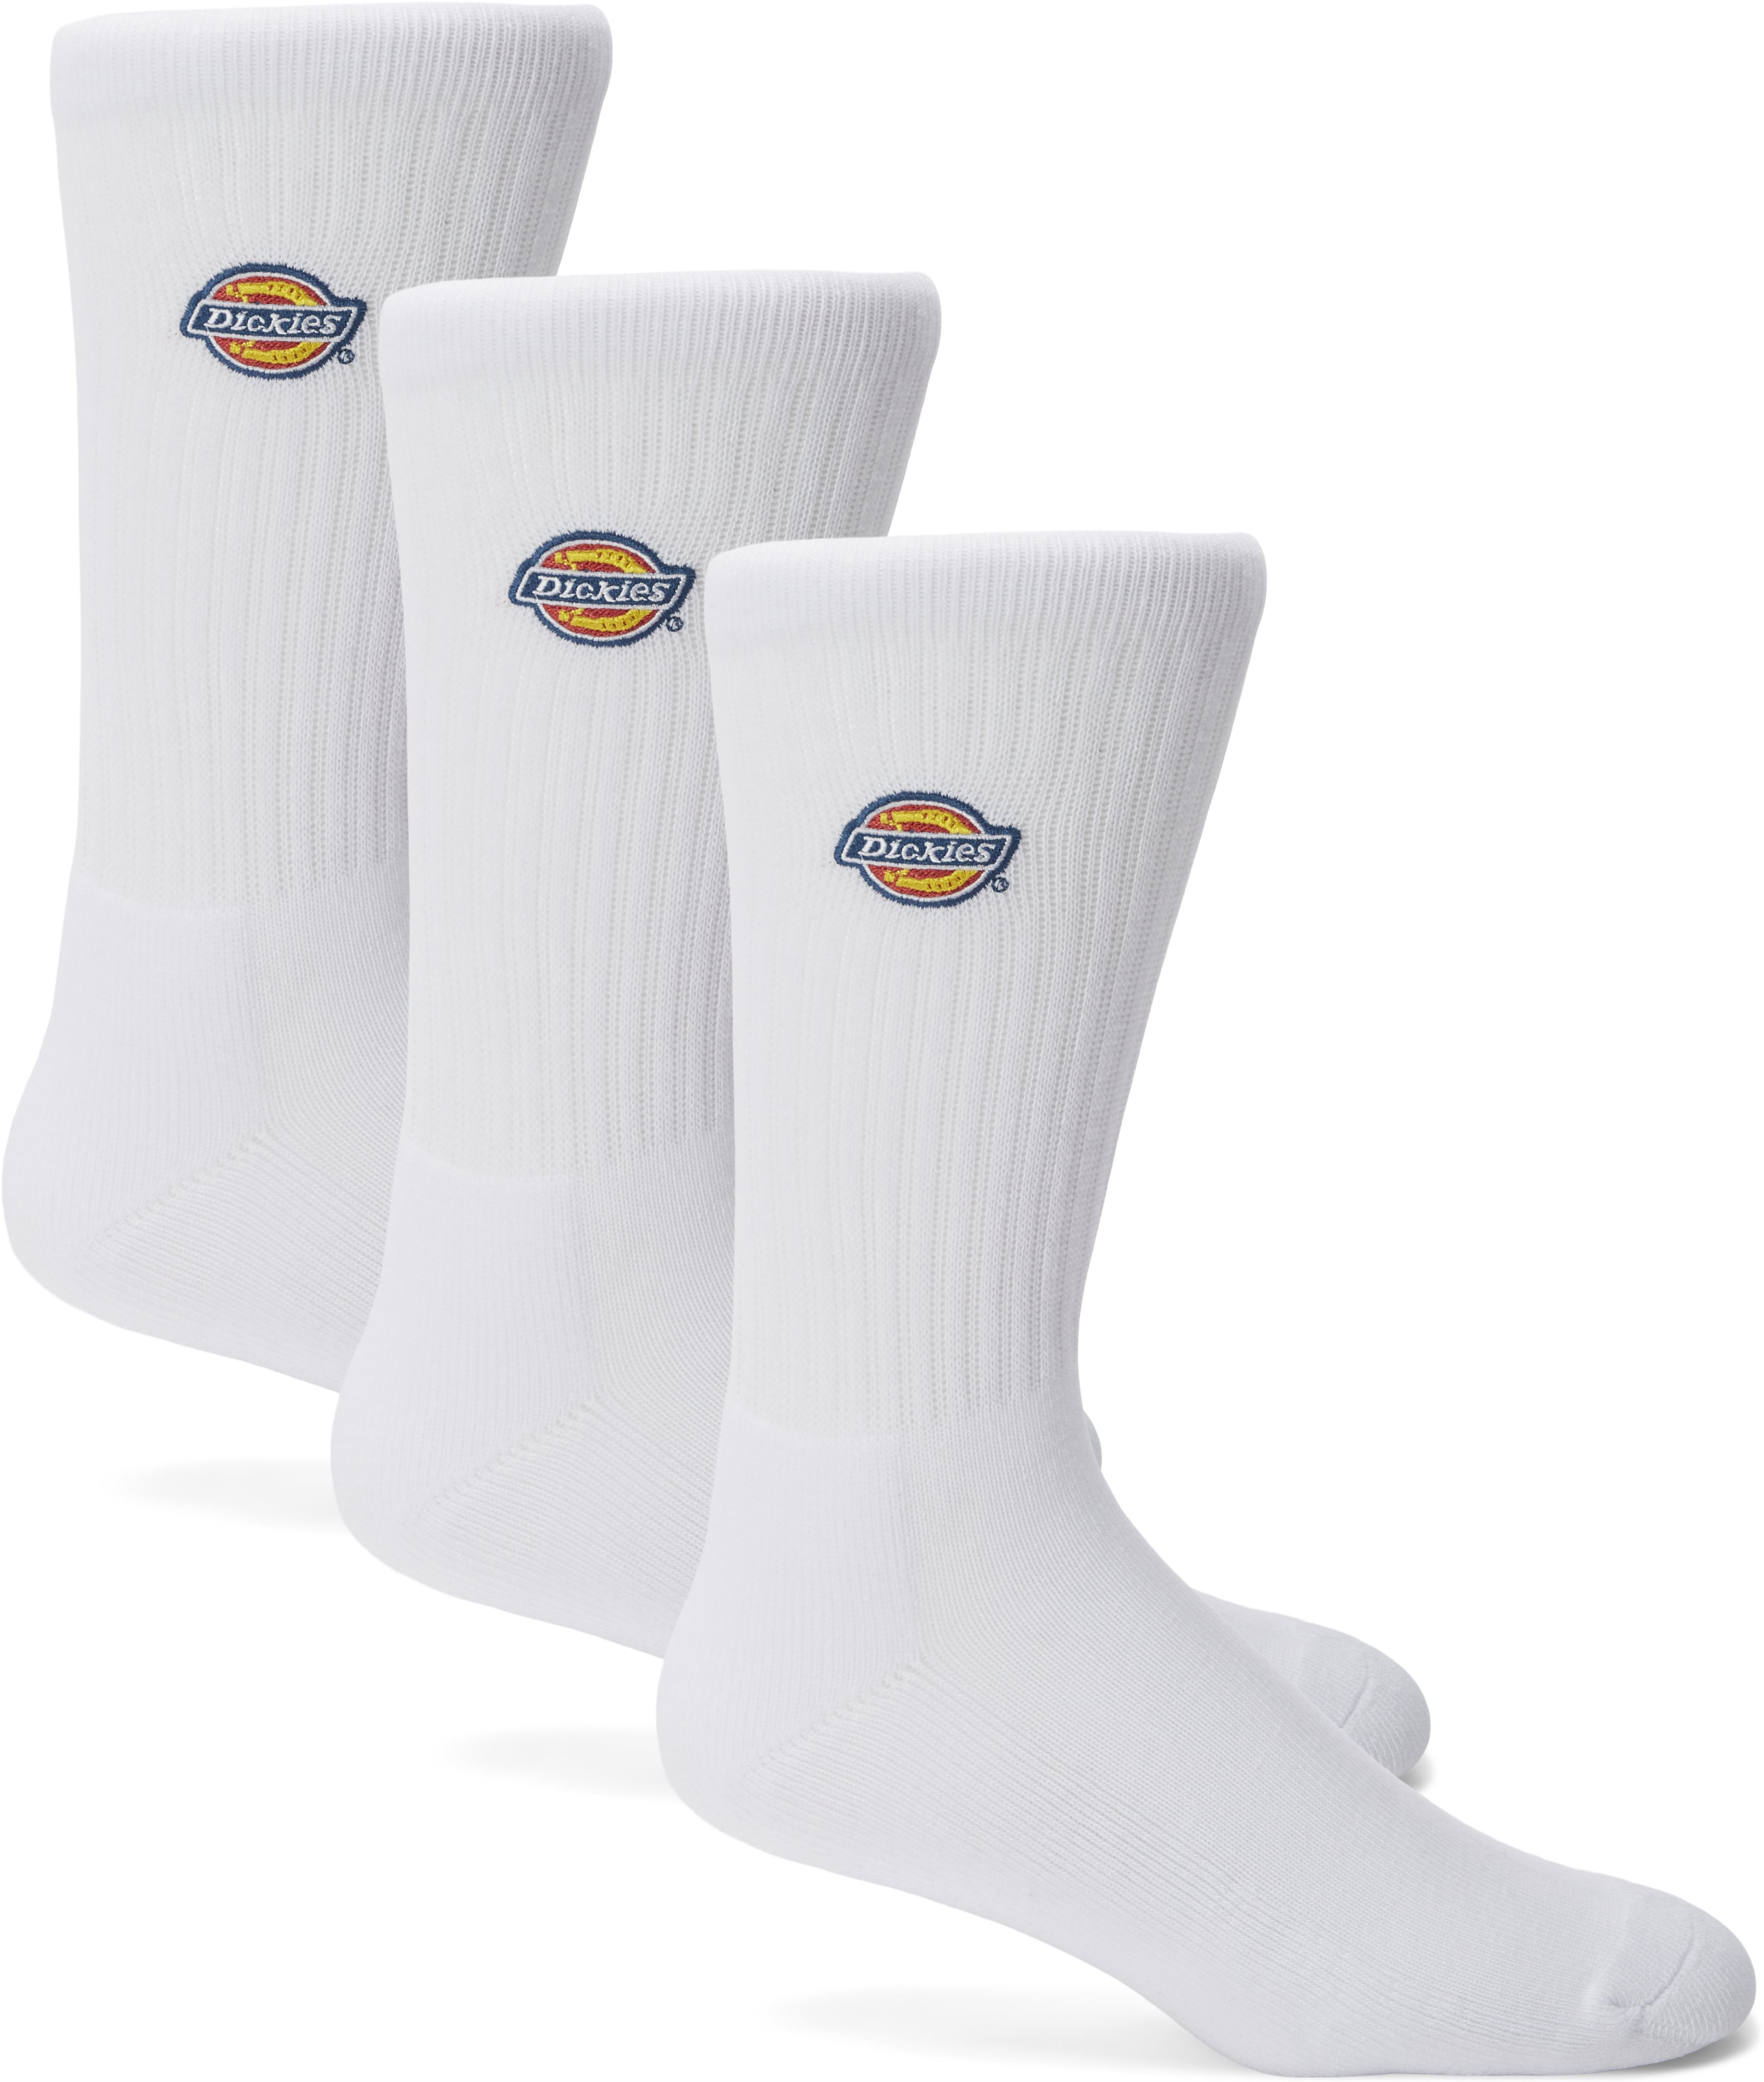 Valley Grove Socks - Socks - White